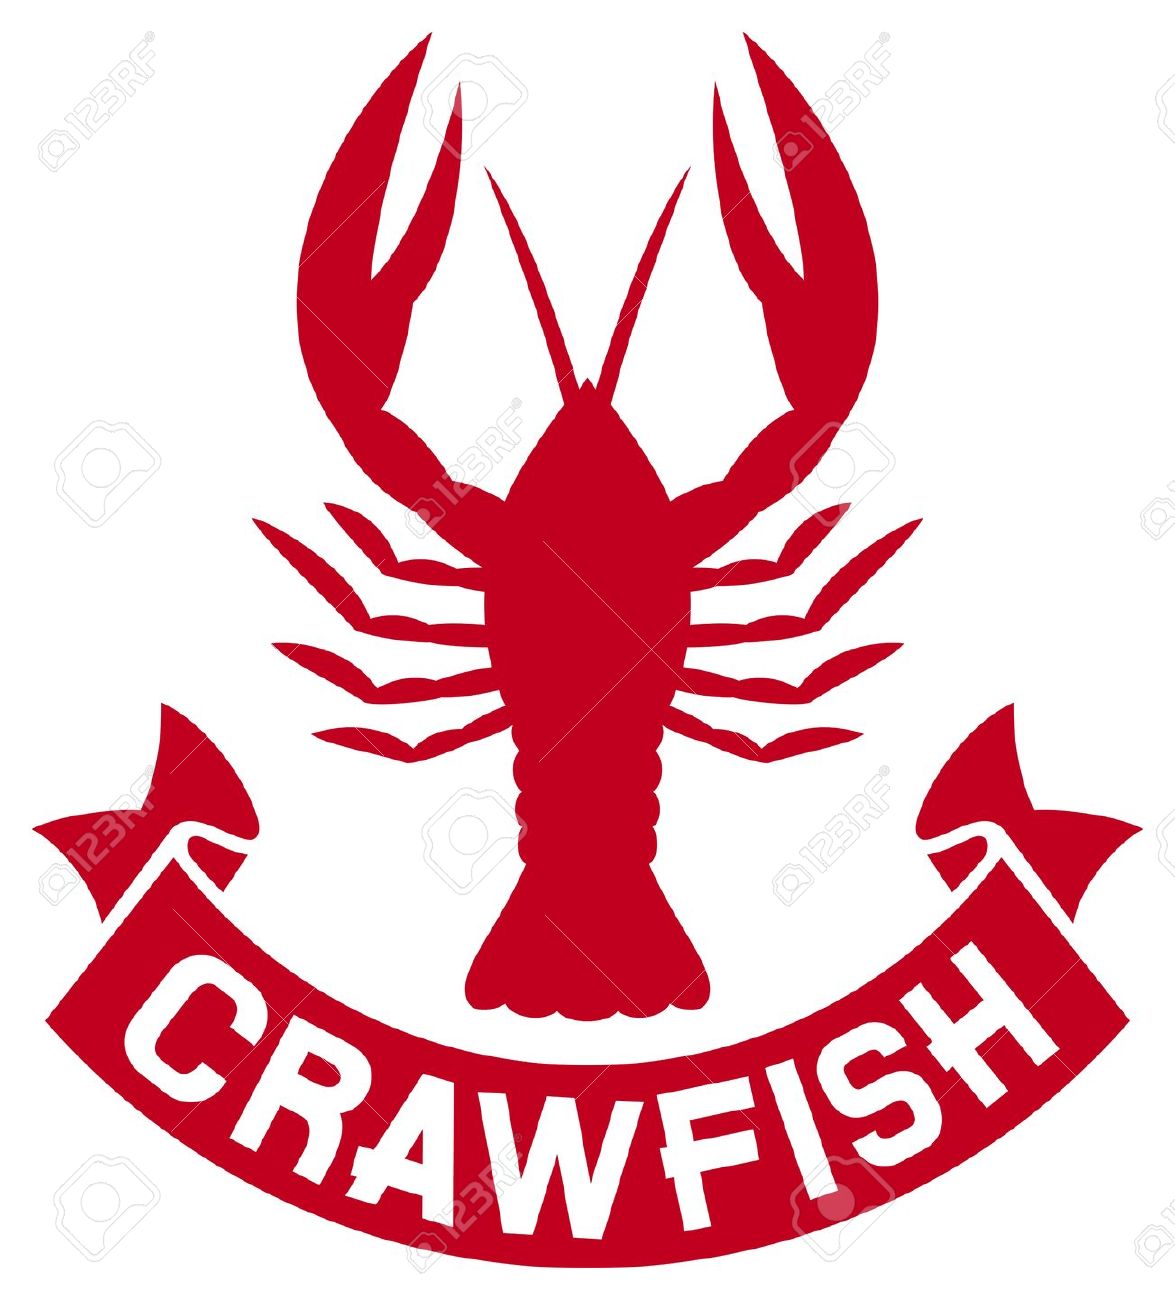 Crawfish cliparts